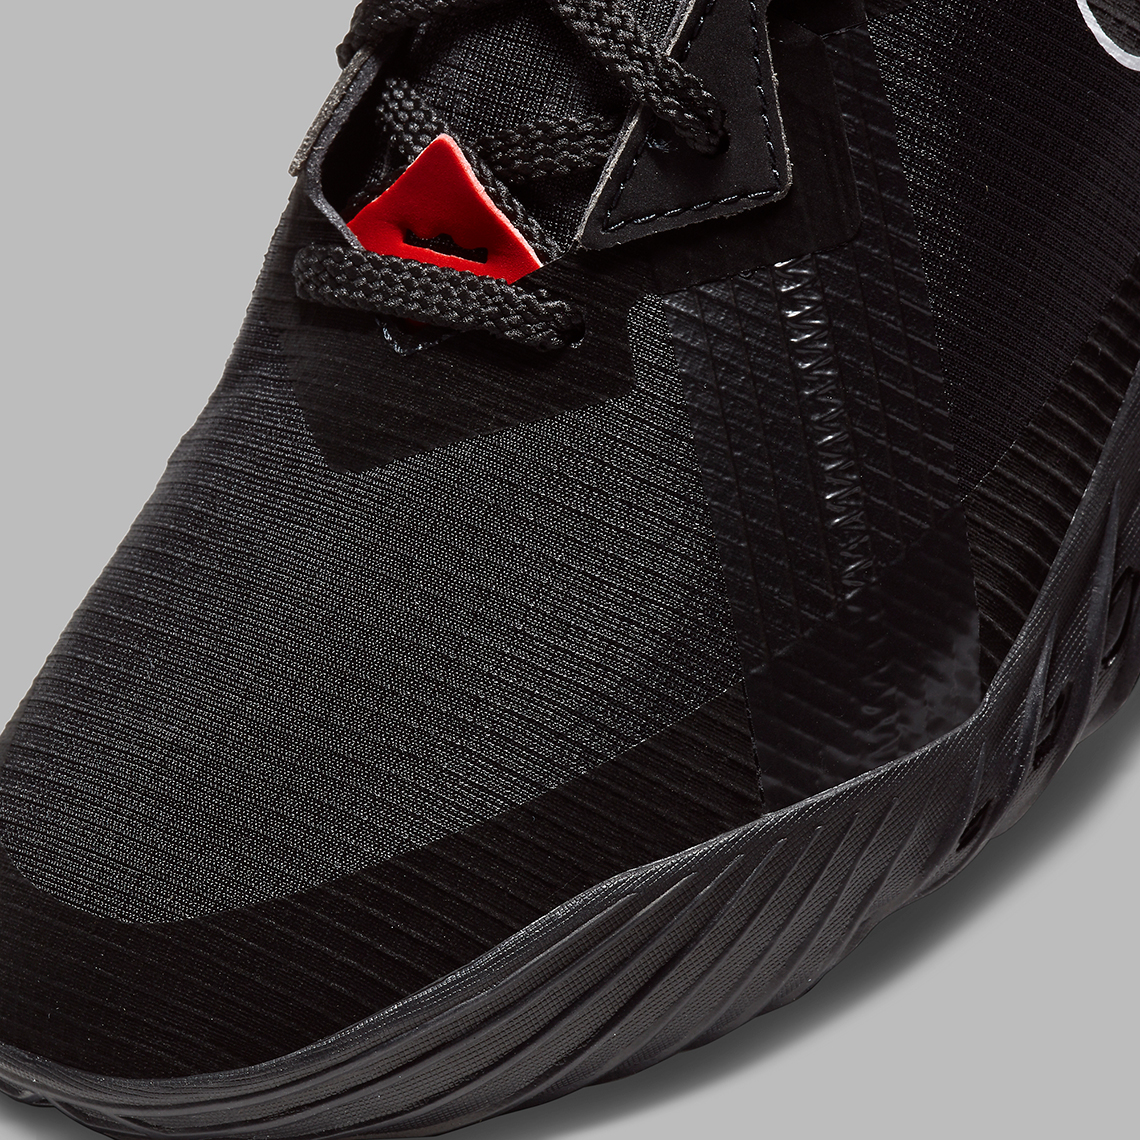 Nike Lebron 18 Low Black Red Cv7562 001 6